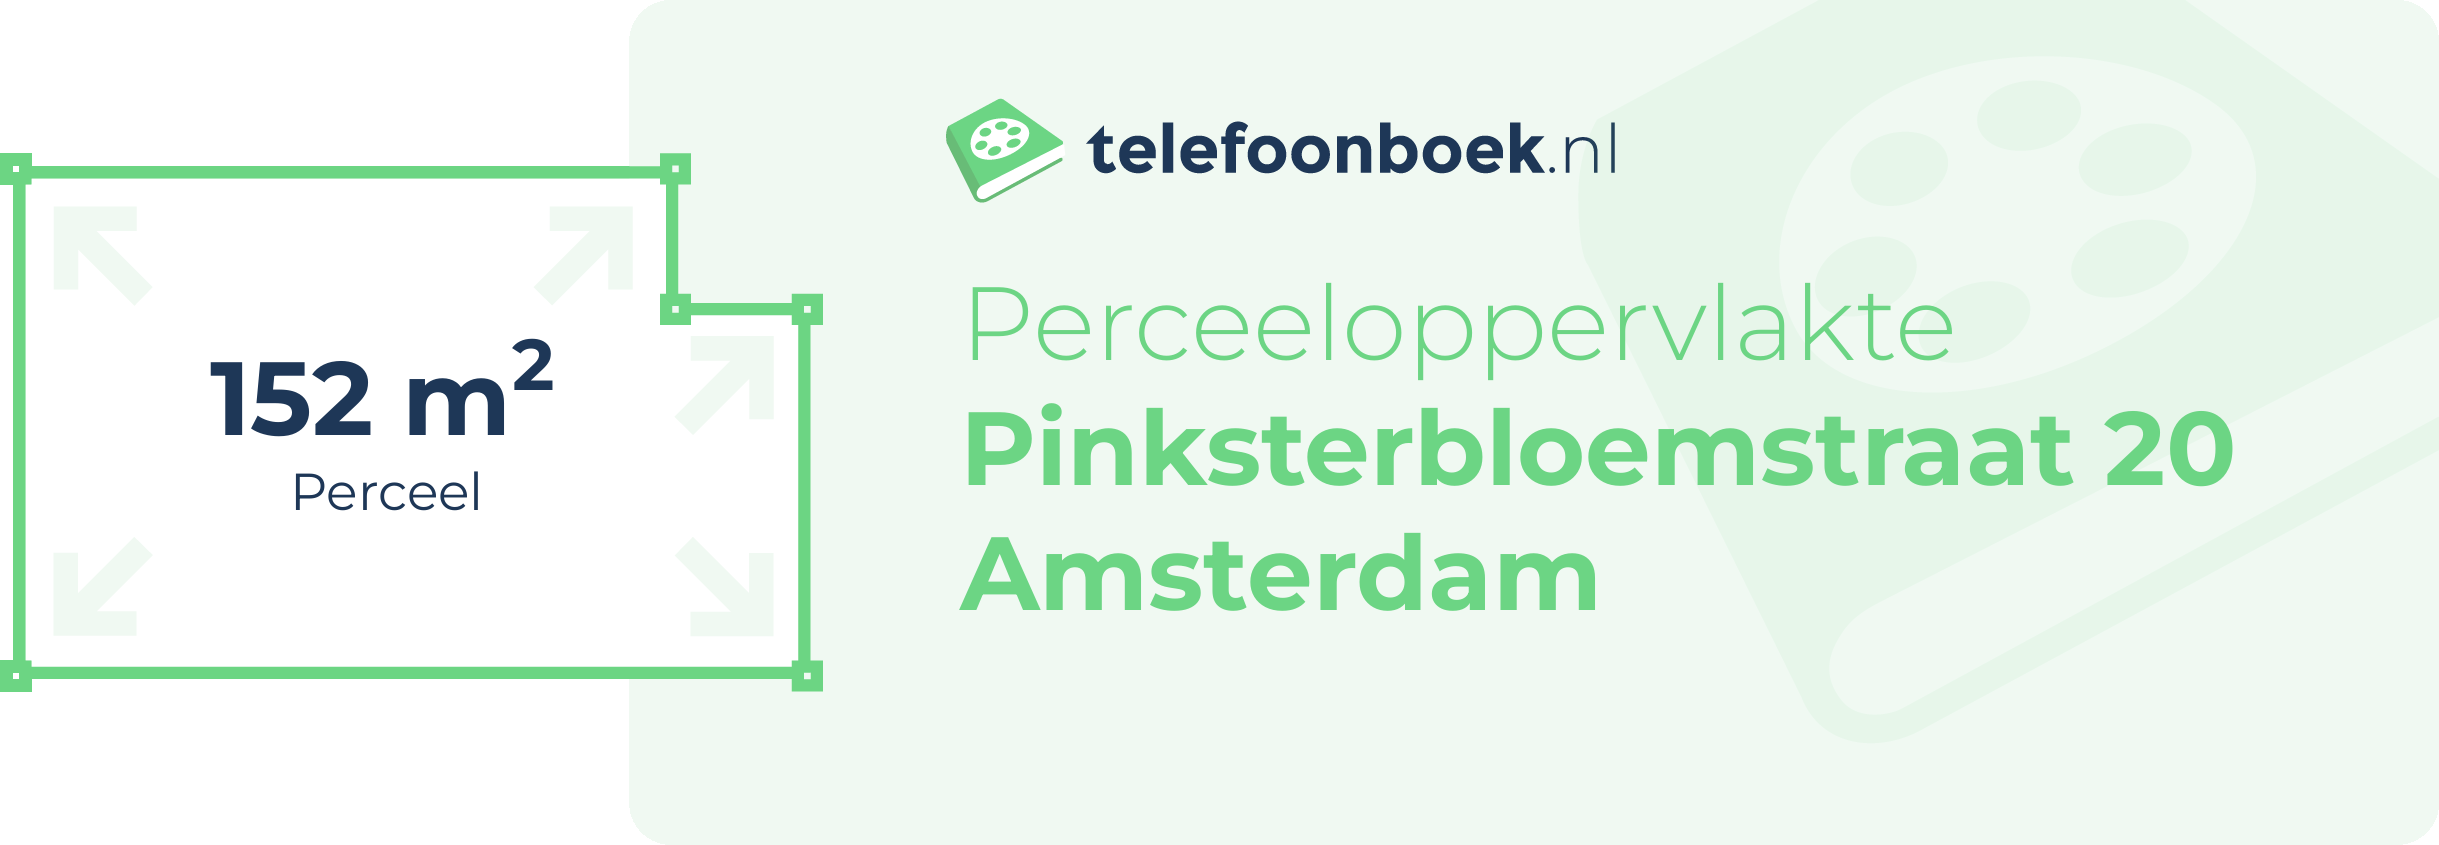 Perceeloppervlakte Pinksterbloemstraat 20 Amsterdam